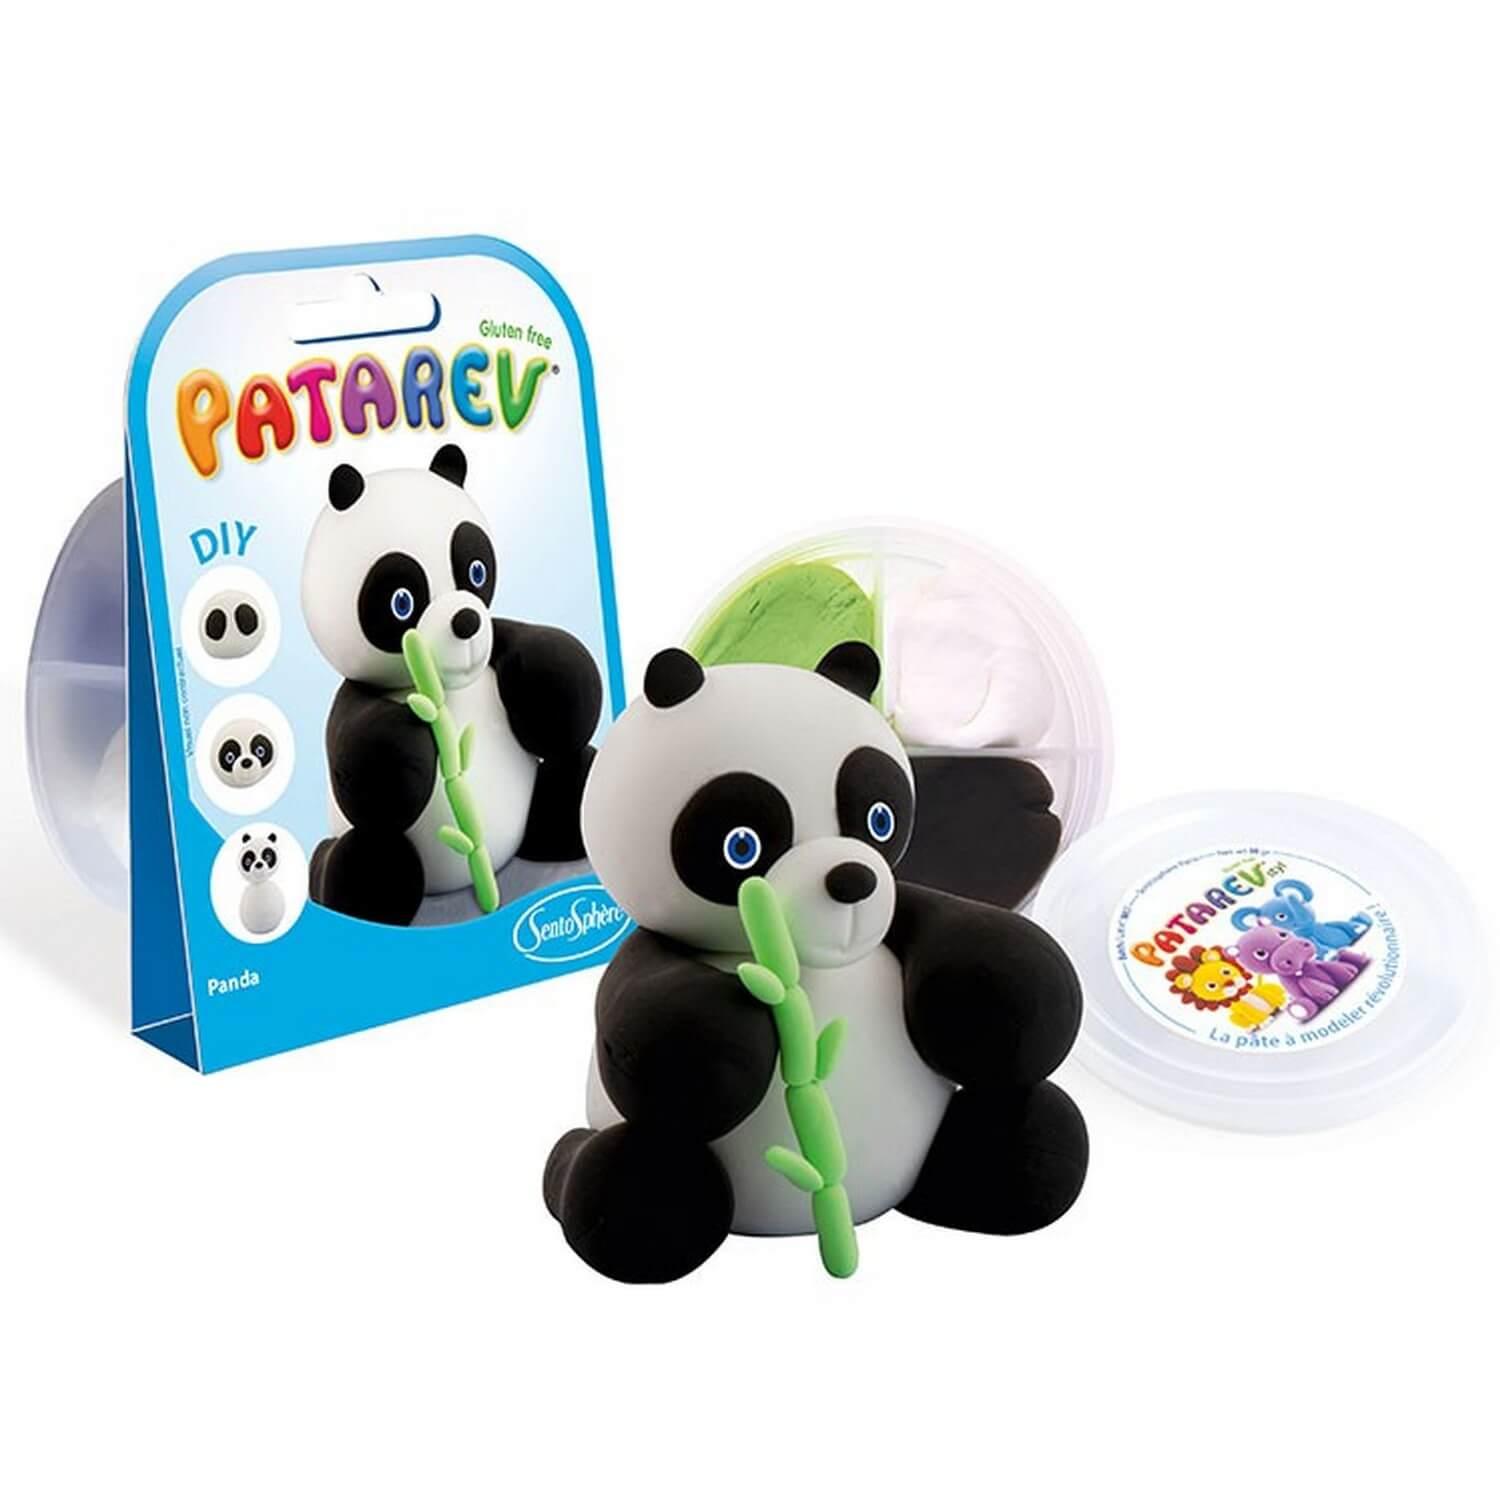 Pâte à modeler Patarev : Pocket Panda - Jeux et jouets Sentosphère - Avenue  des Jeux